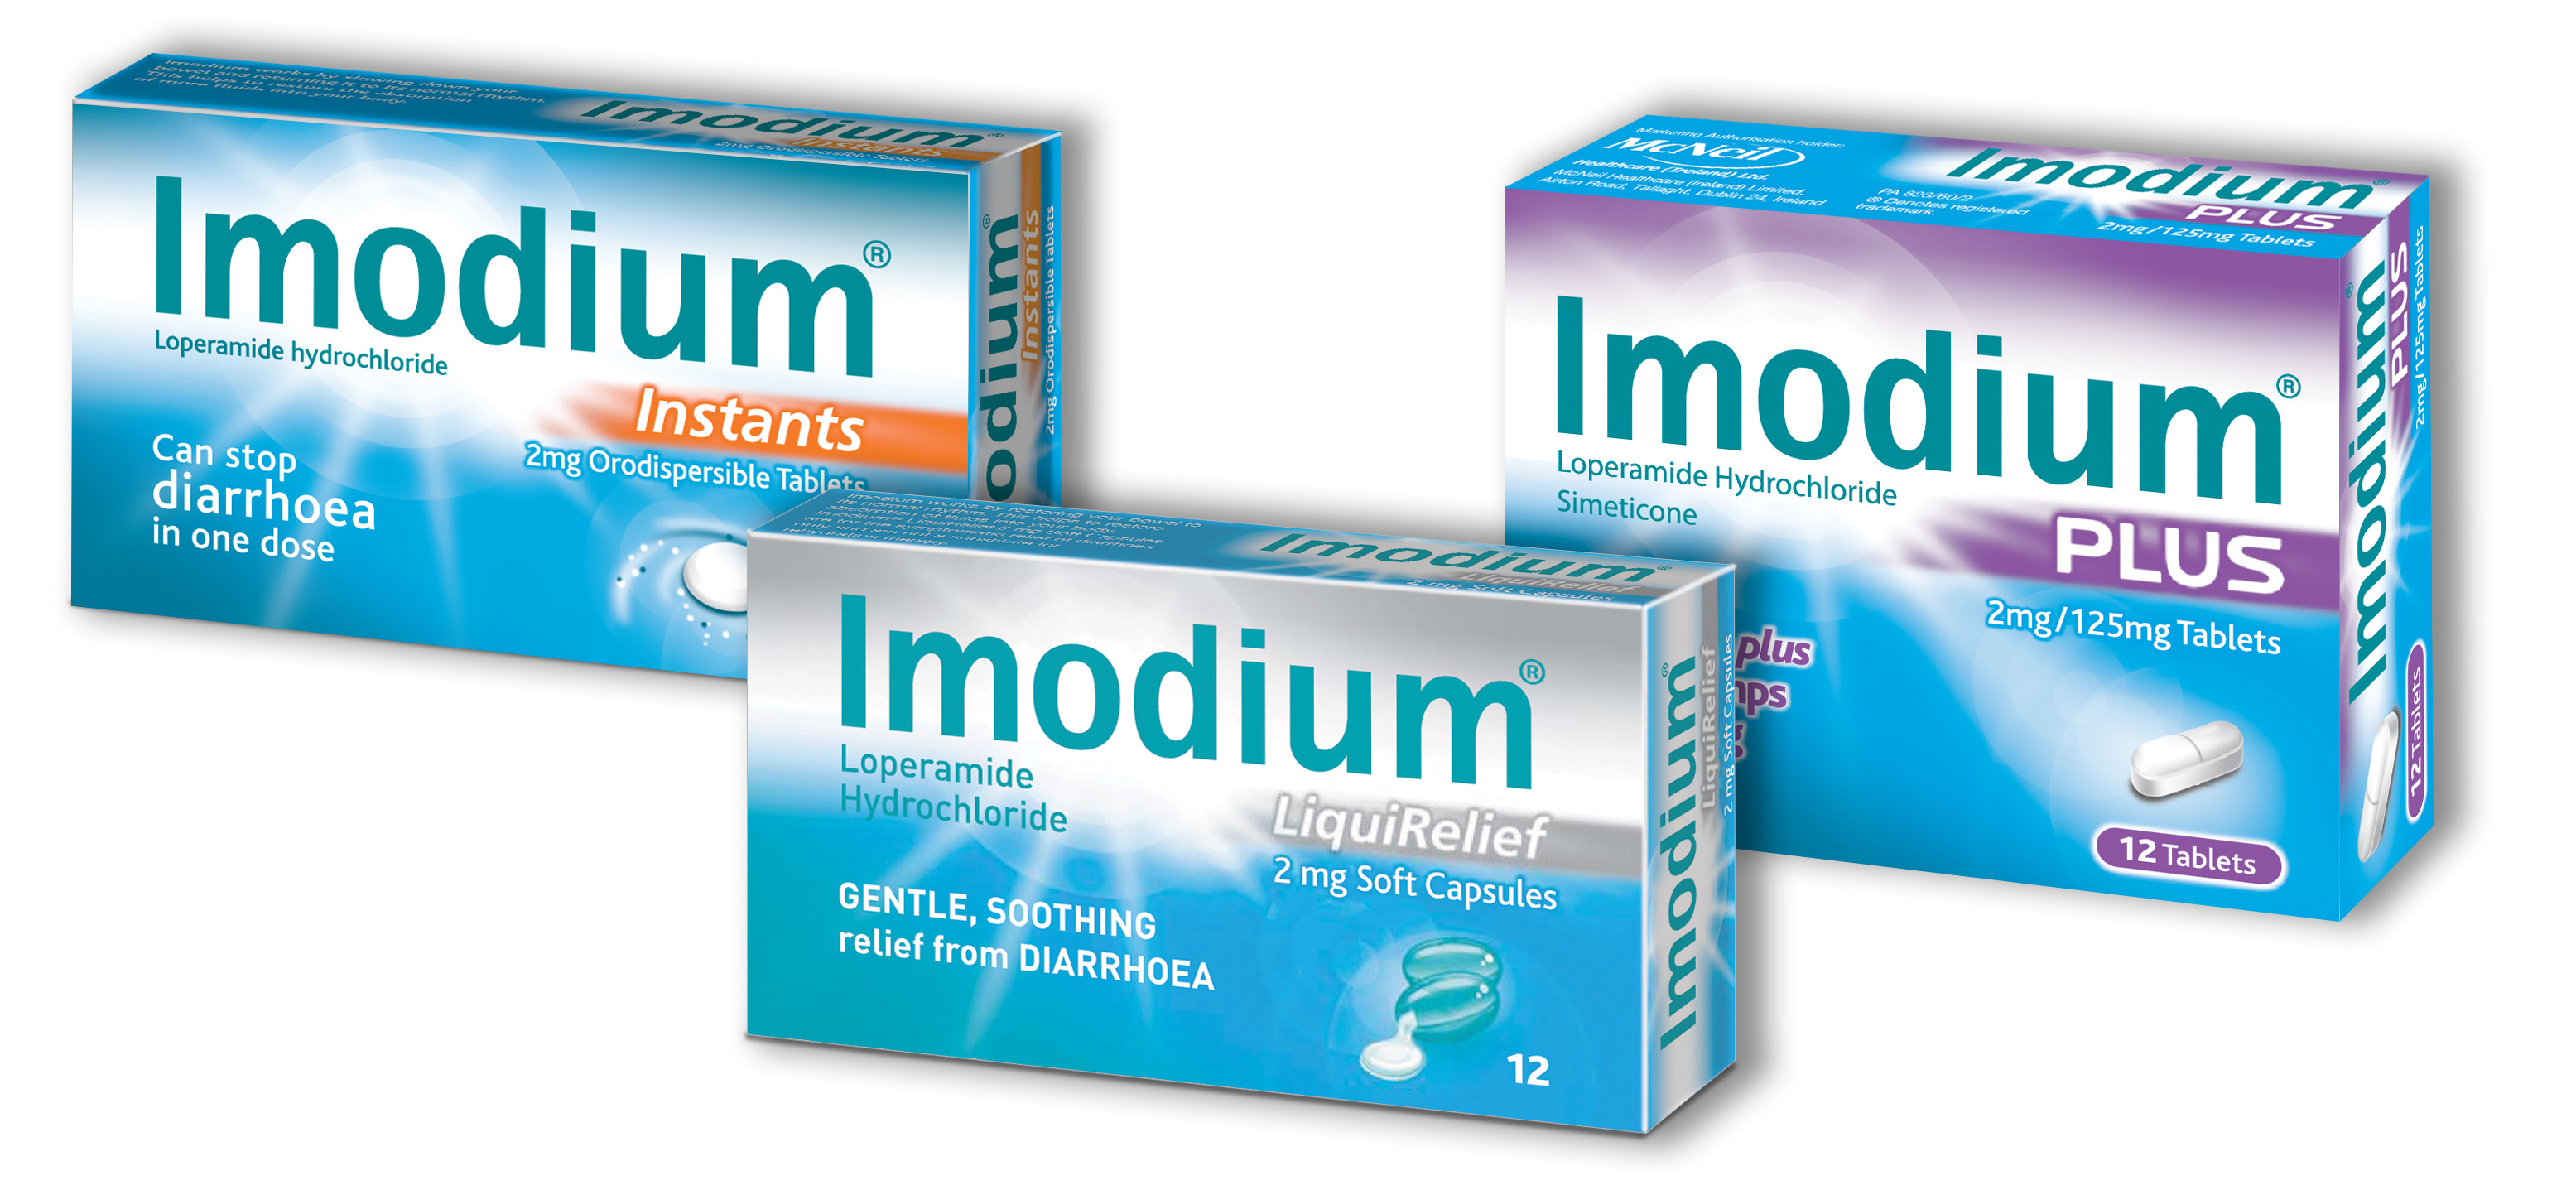 Imodium Product Range